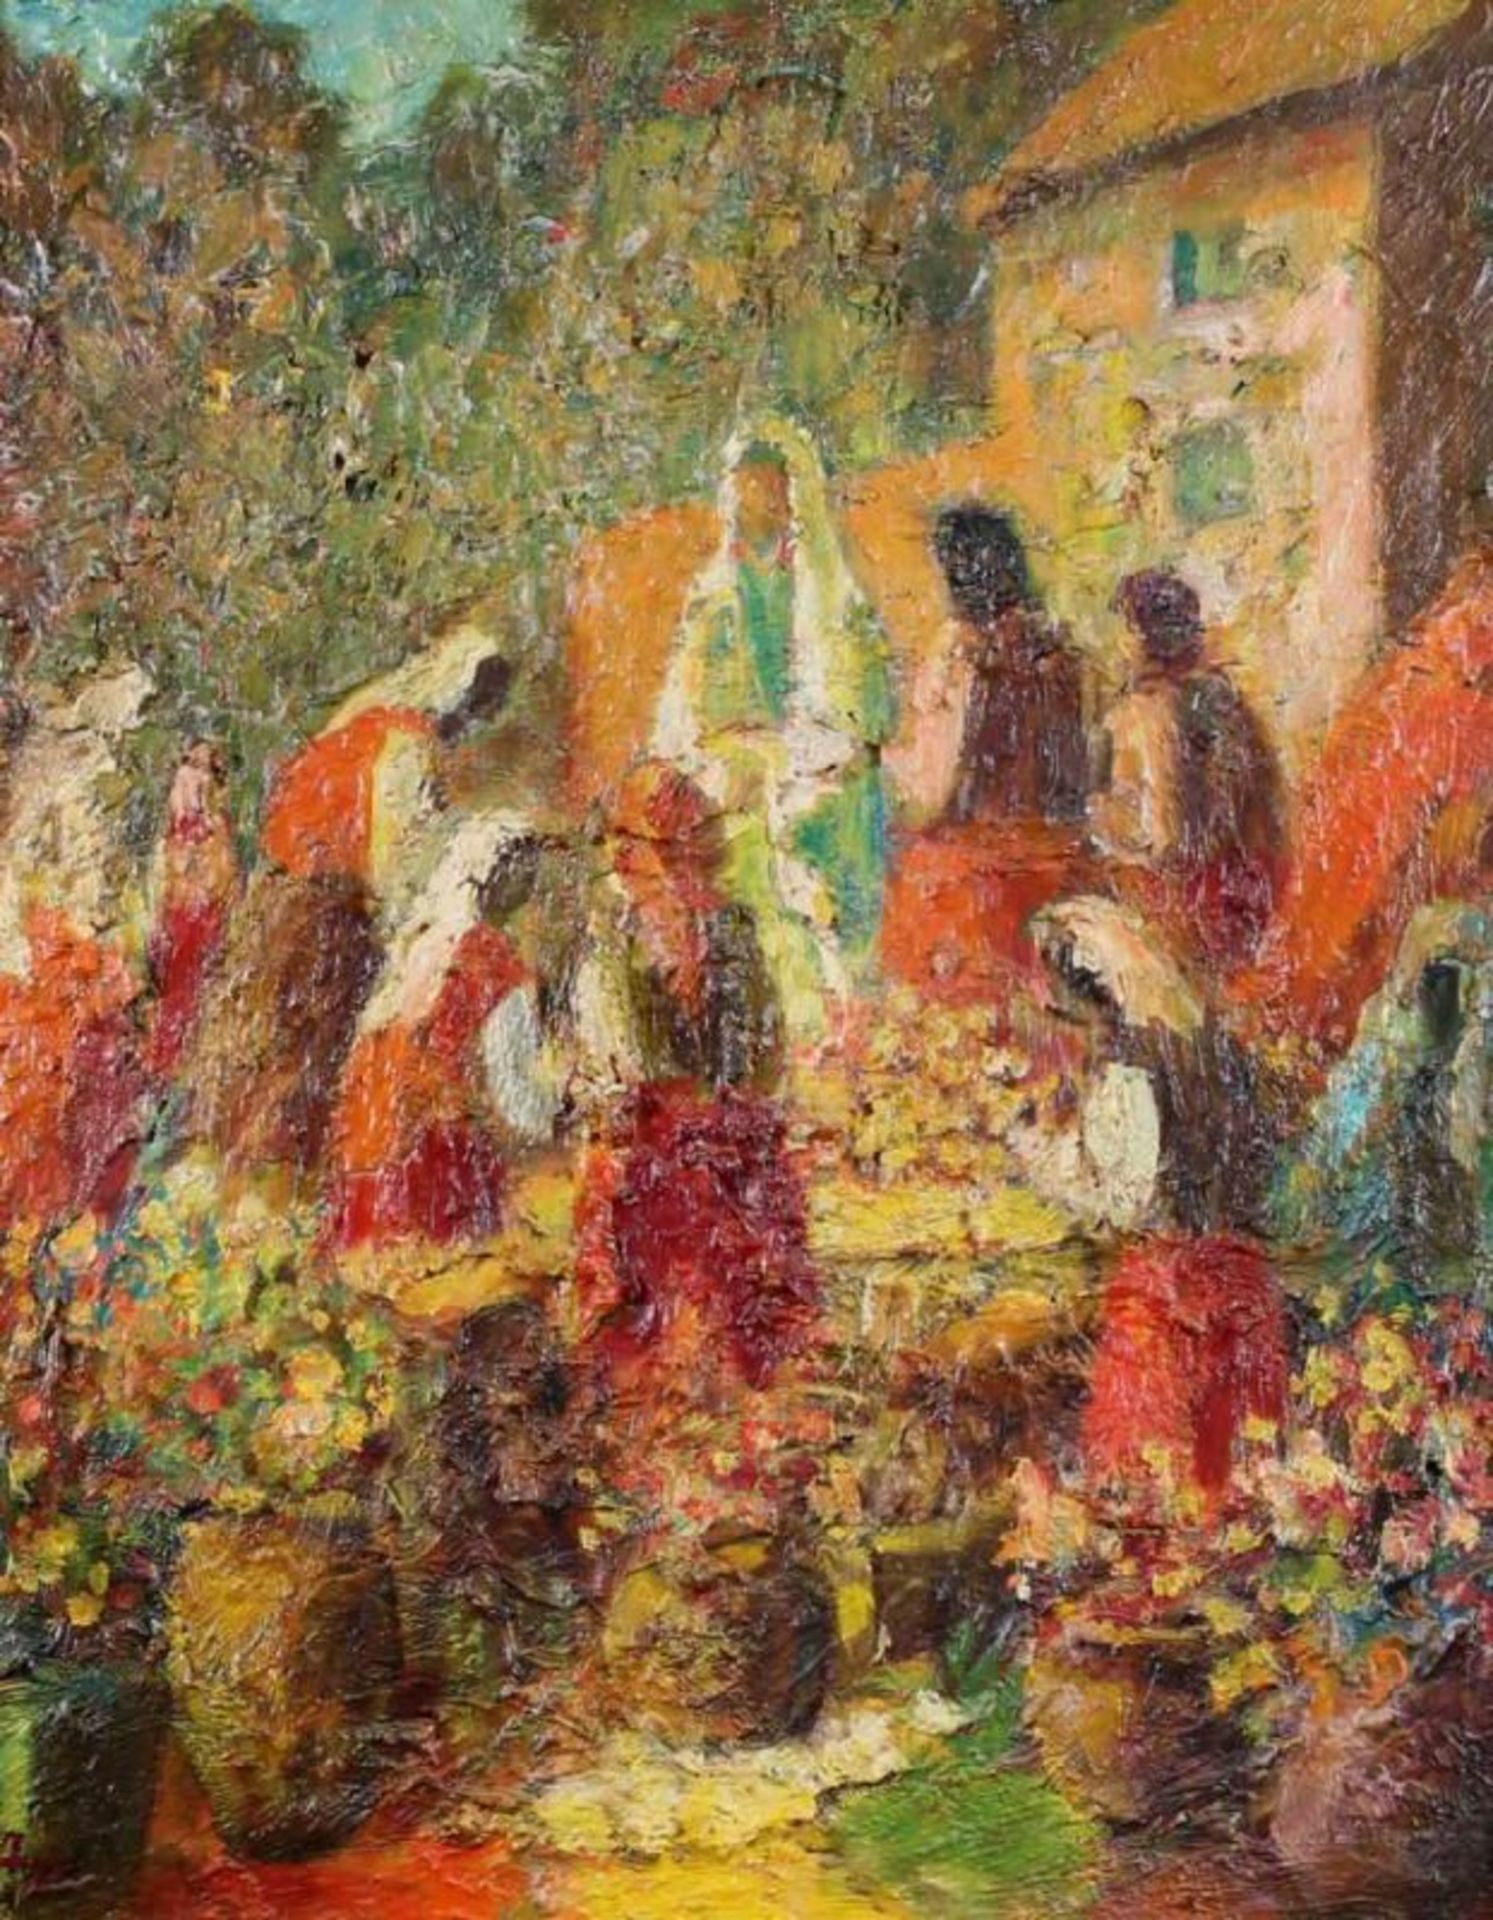 Tikhomirov, Alexander (1916 Baku - 1995 Moskau, russischer Maler), "Weinlese in Baku", Öl auf